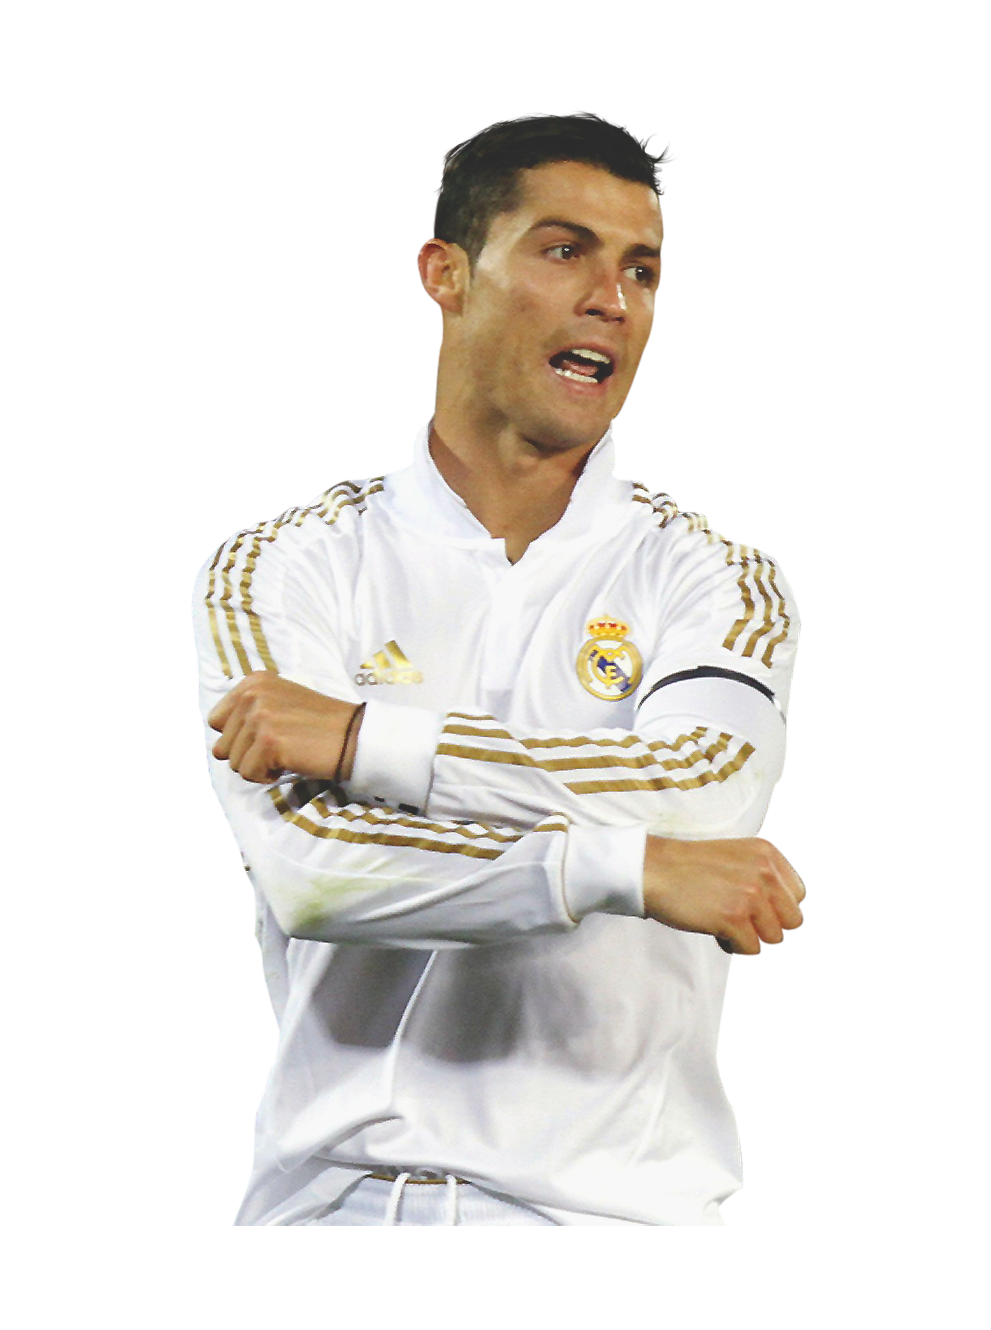 Designer de Boleiro: Cristiano Ronaldo - Portugal/Real Madrid